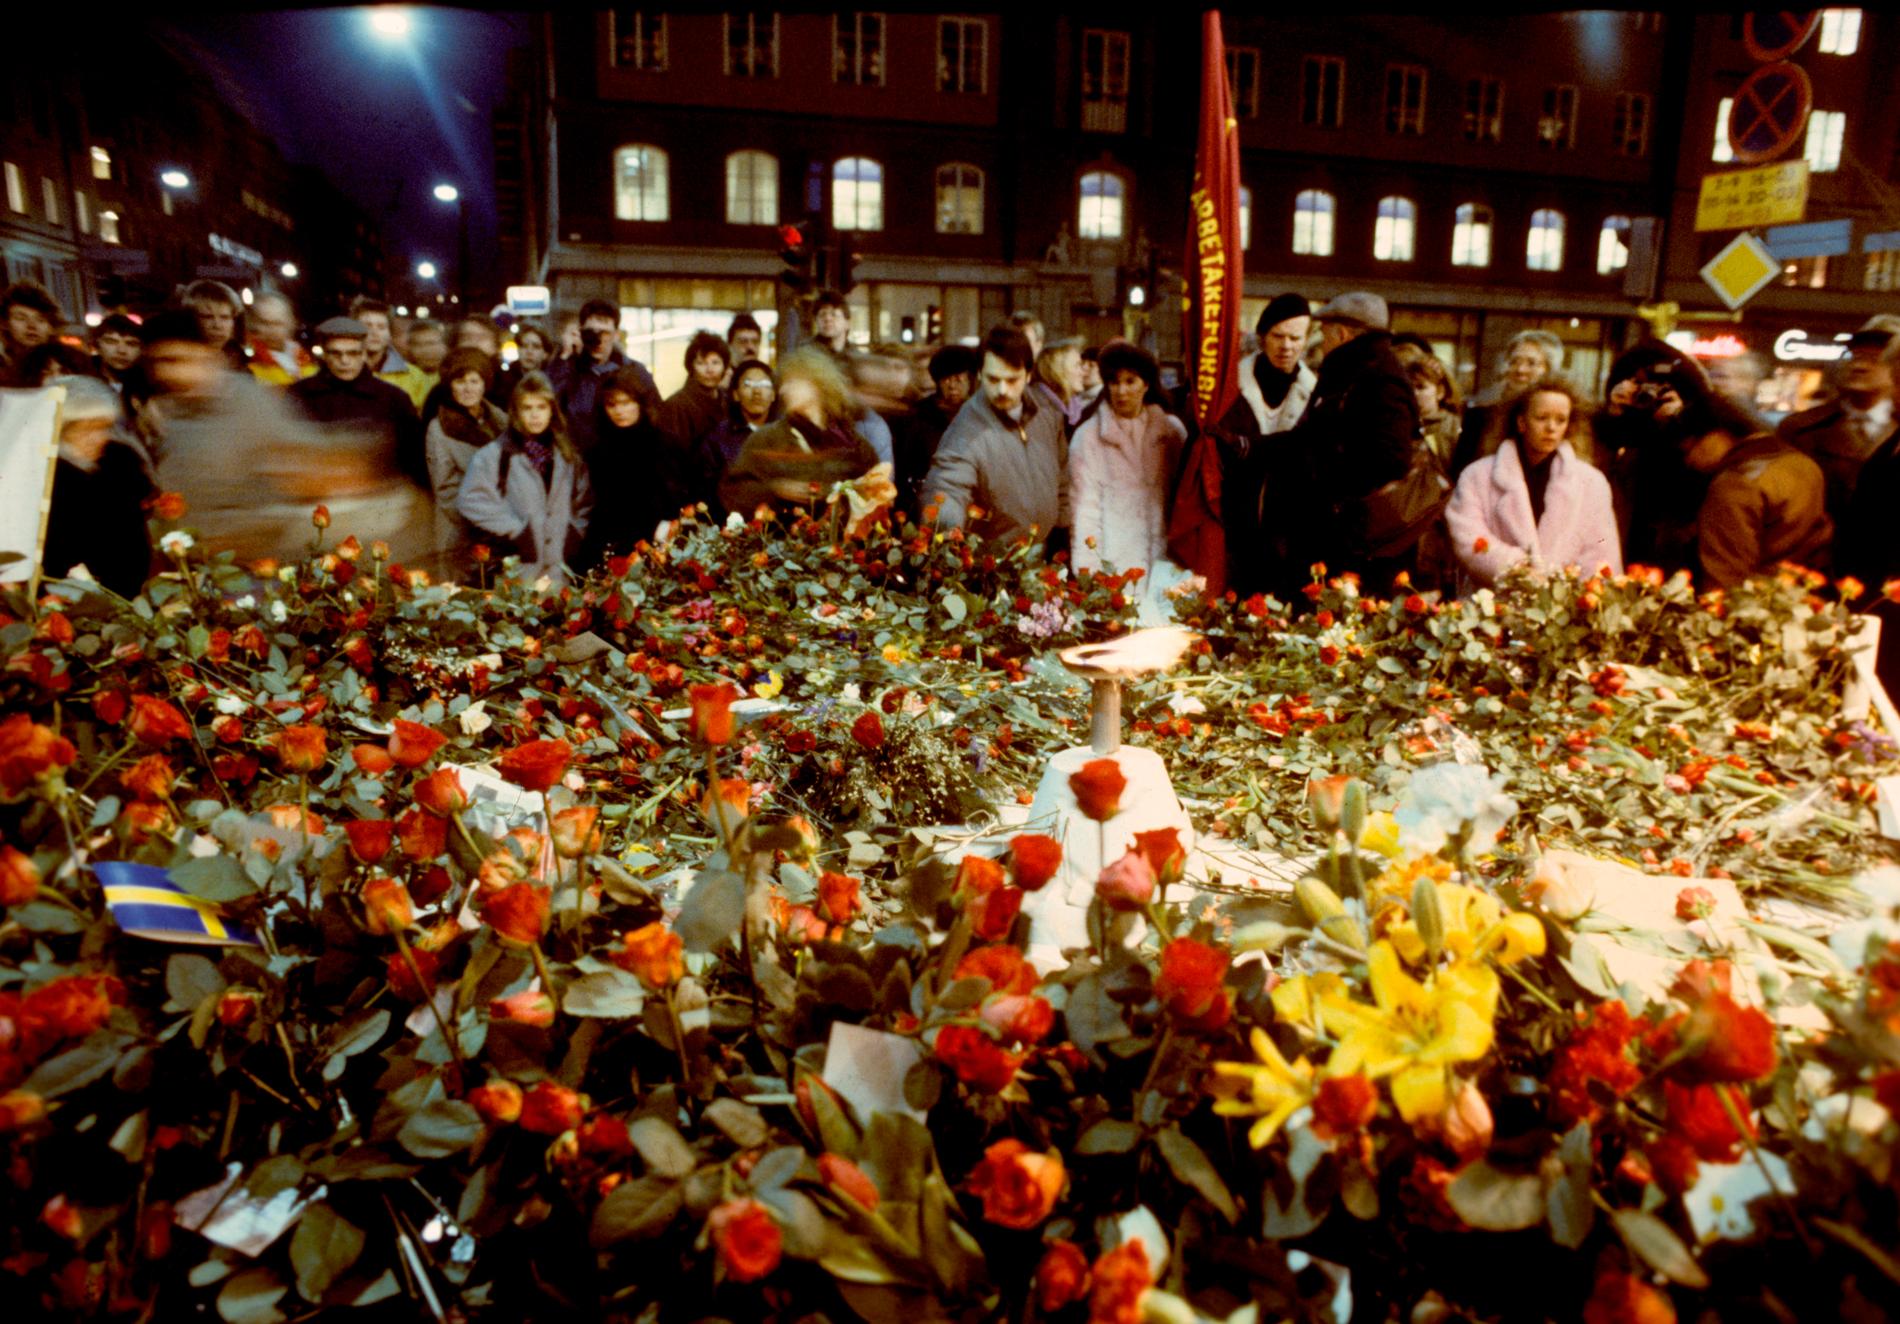 Sörjande människor lägger blommor på mordplatsen vid hörnet av Sveavägen och Tunnelgatan i mars 1986, för att hedra den mördade statsministern.